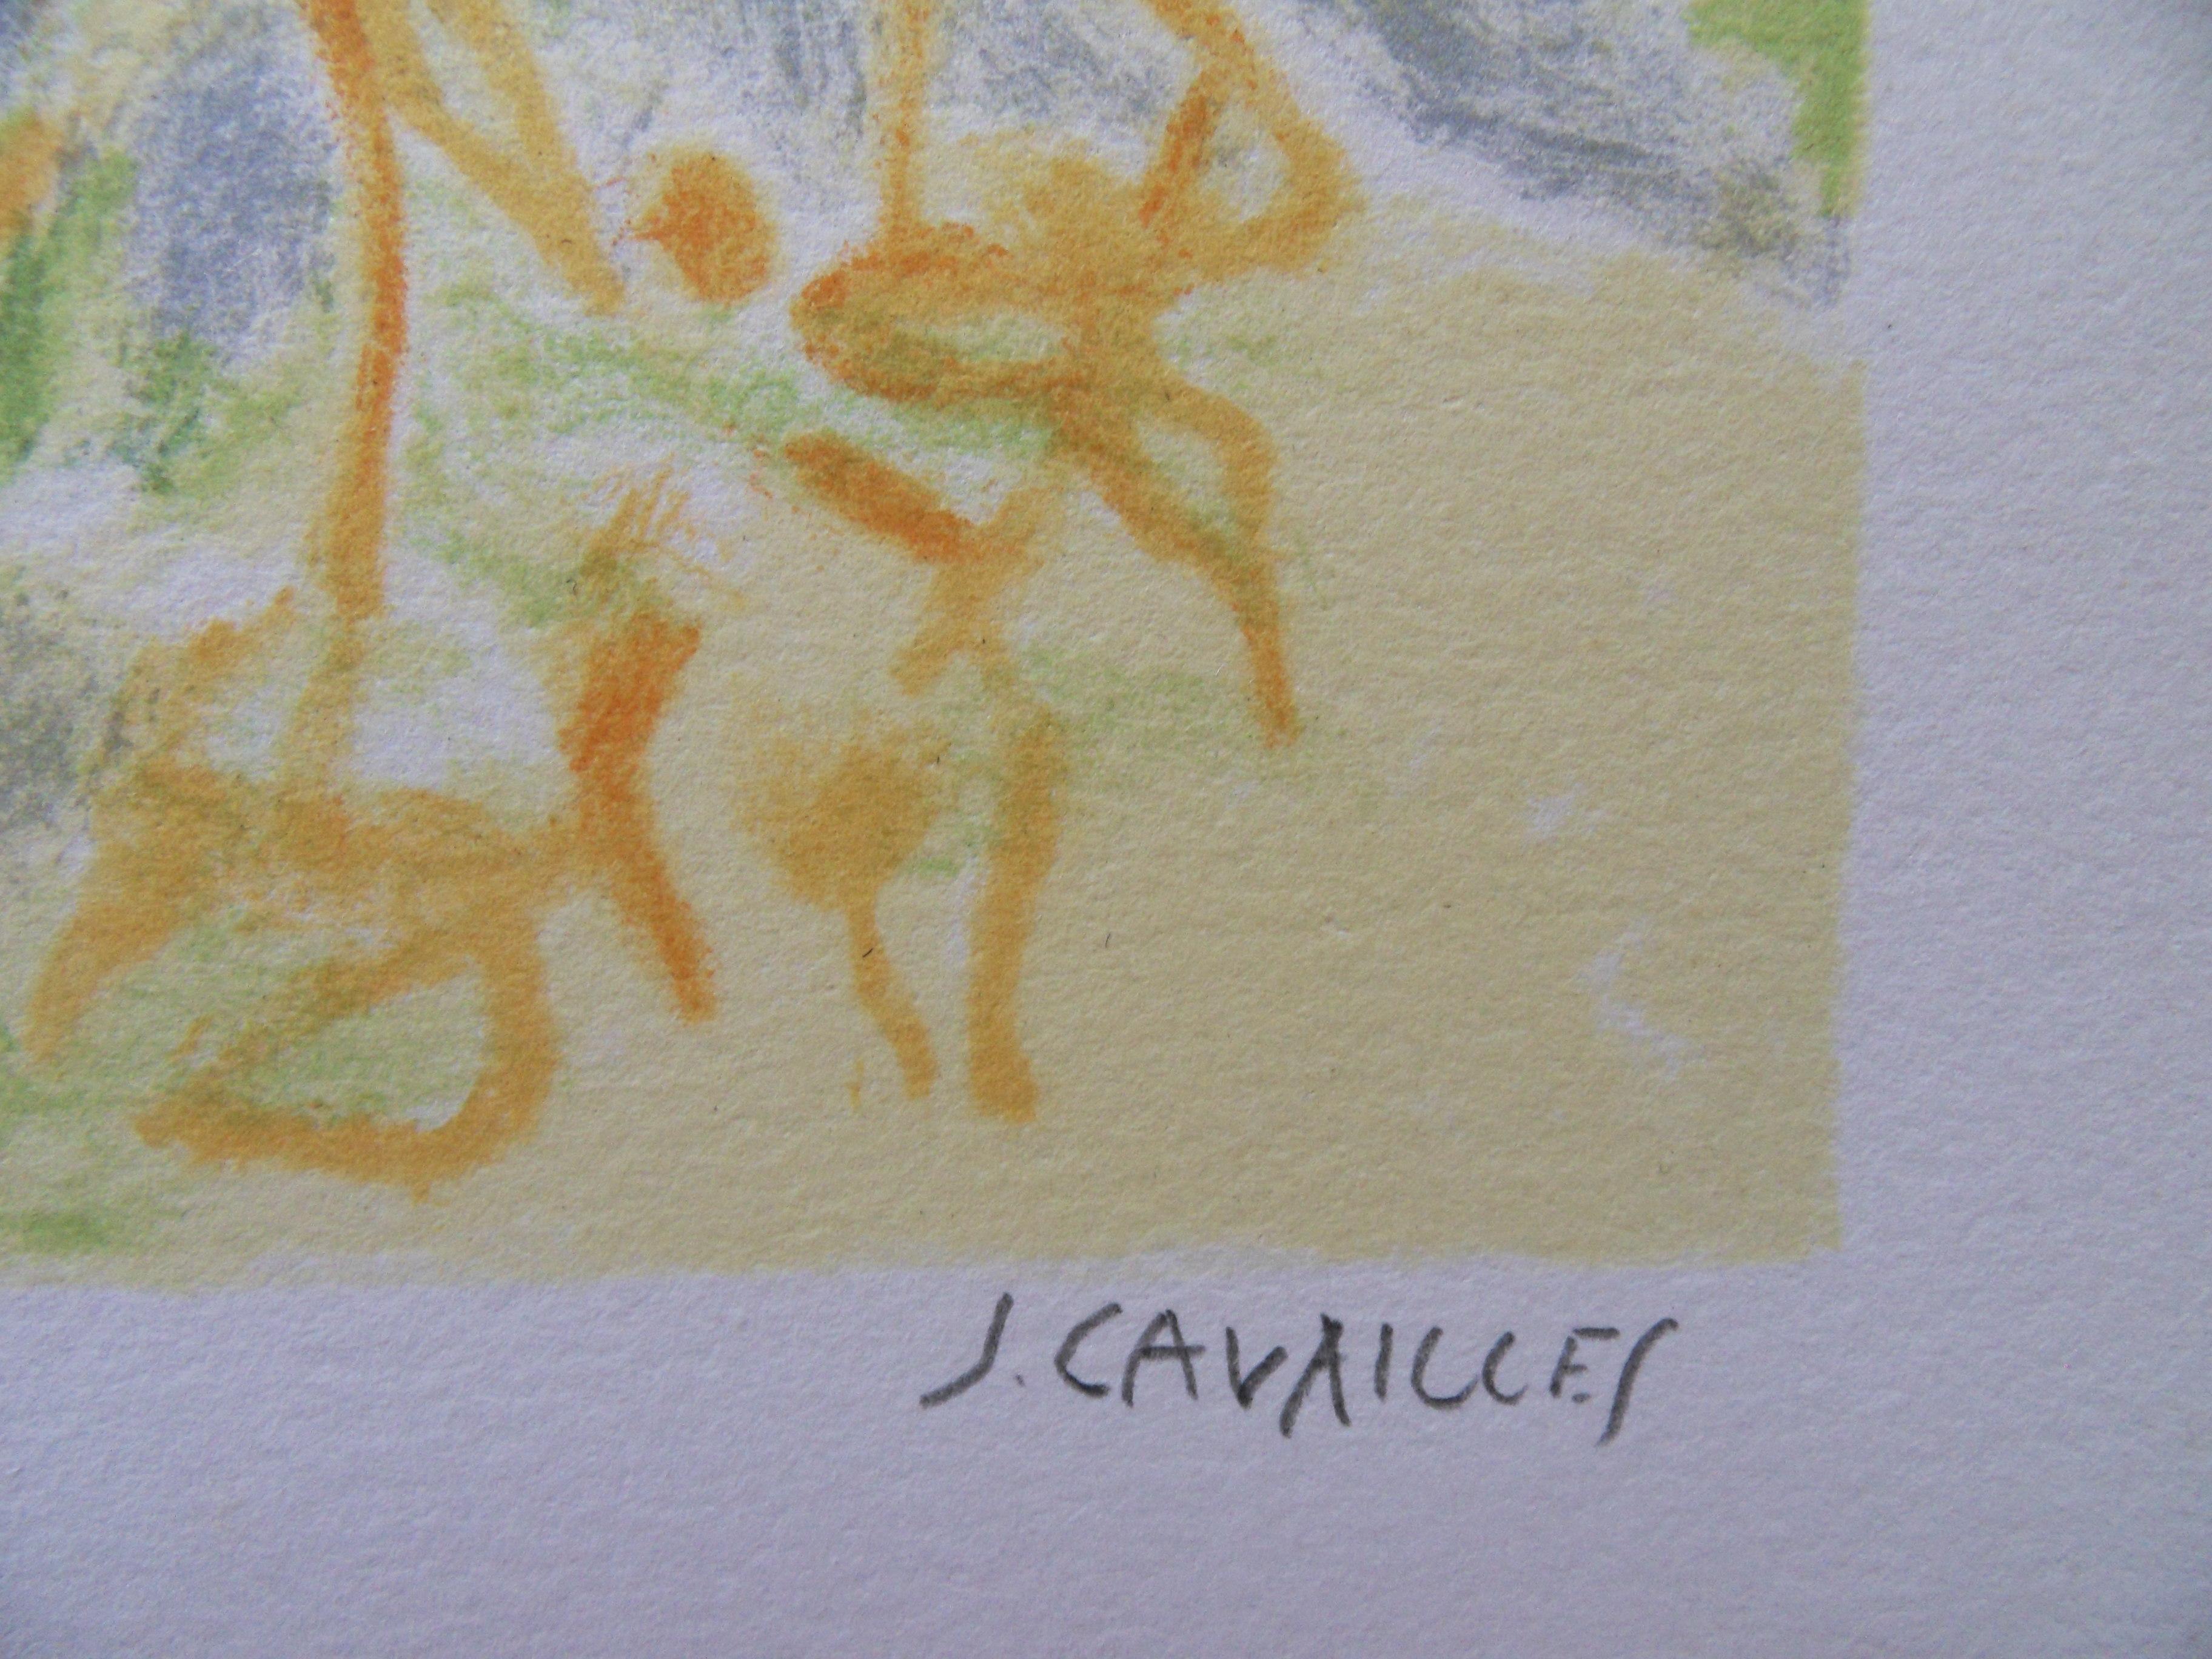 Jules CAVAILLES
Landschaft in der Provence : Das alte Haus 

Original-Lithographie
Handsigniert mit Bleistift
Auf Pergament 33 x 50 cm (ca. 13 x 20 Zoll)

Ausgezeichneter Zustand